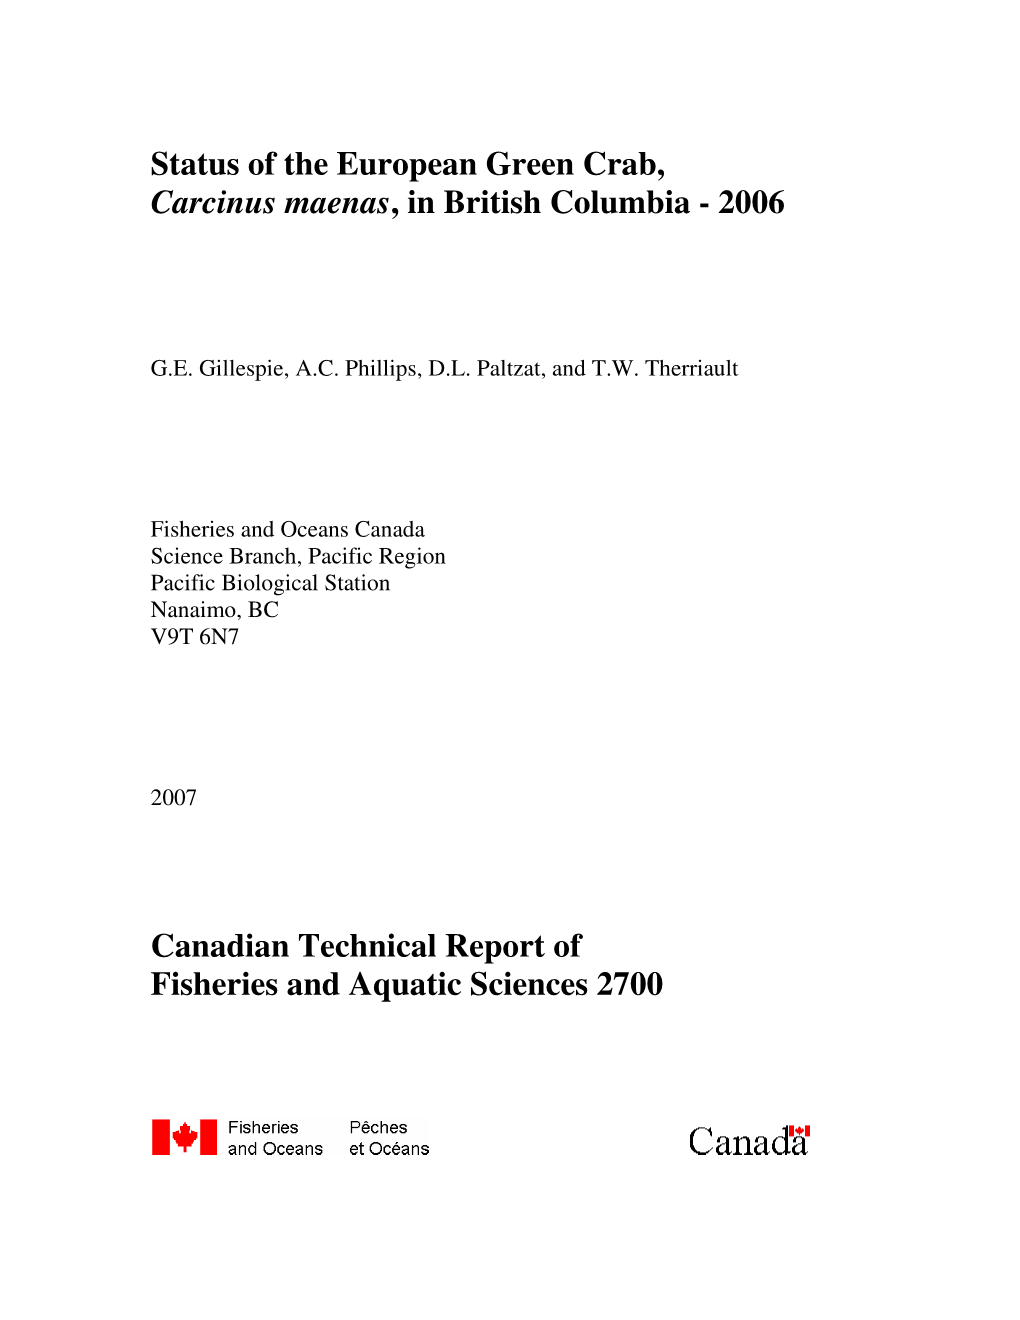 Status of the European Green Crab, Carcinus Maenas, in British Columbia